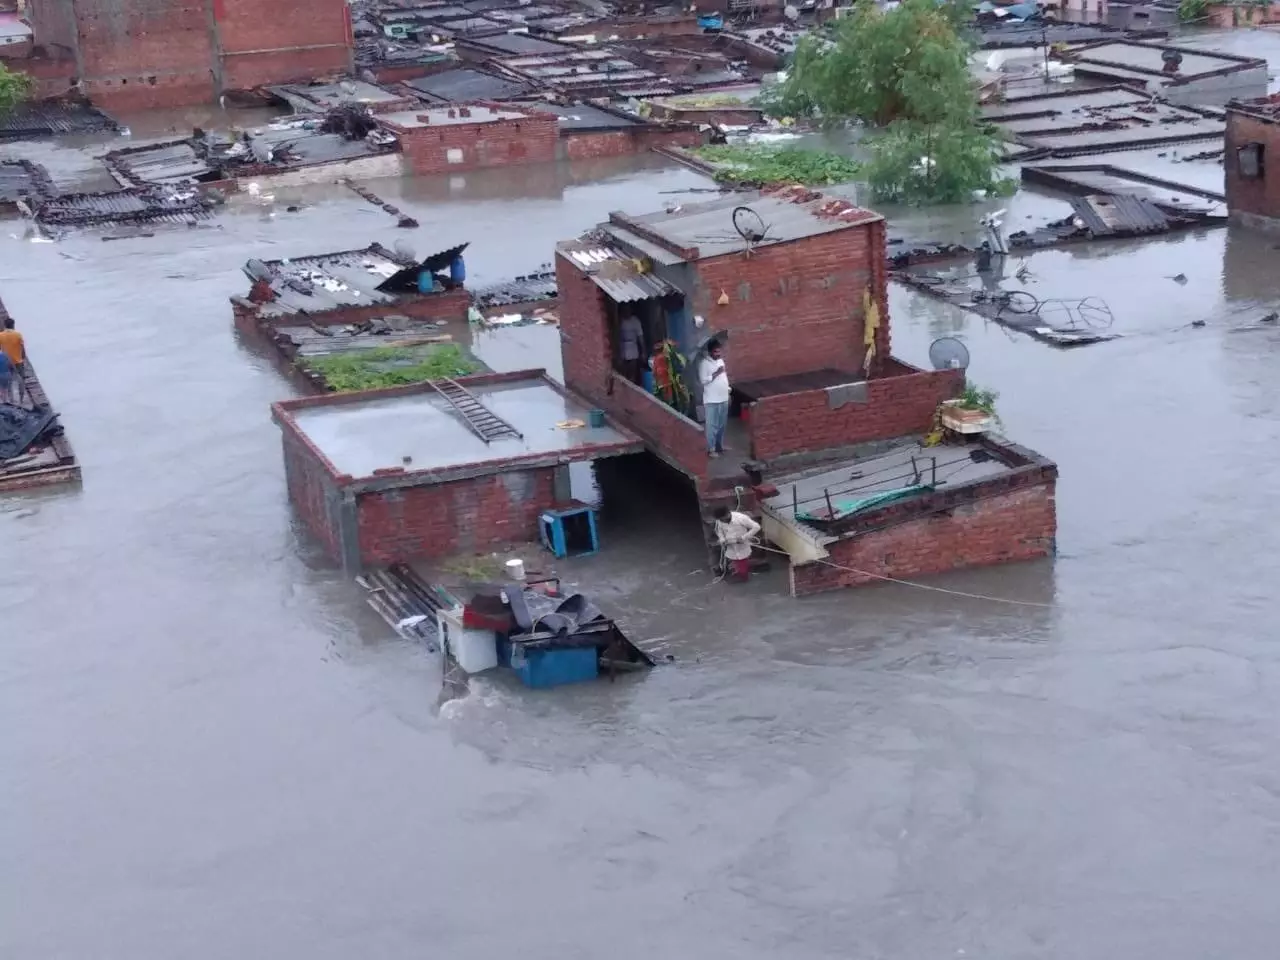 16 killed as rain lashes Uttarakhand, roads, houses got washed away